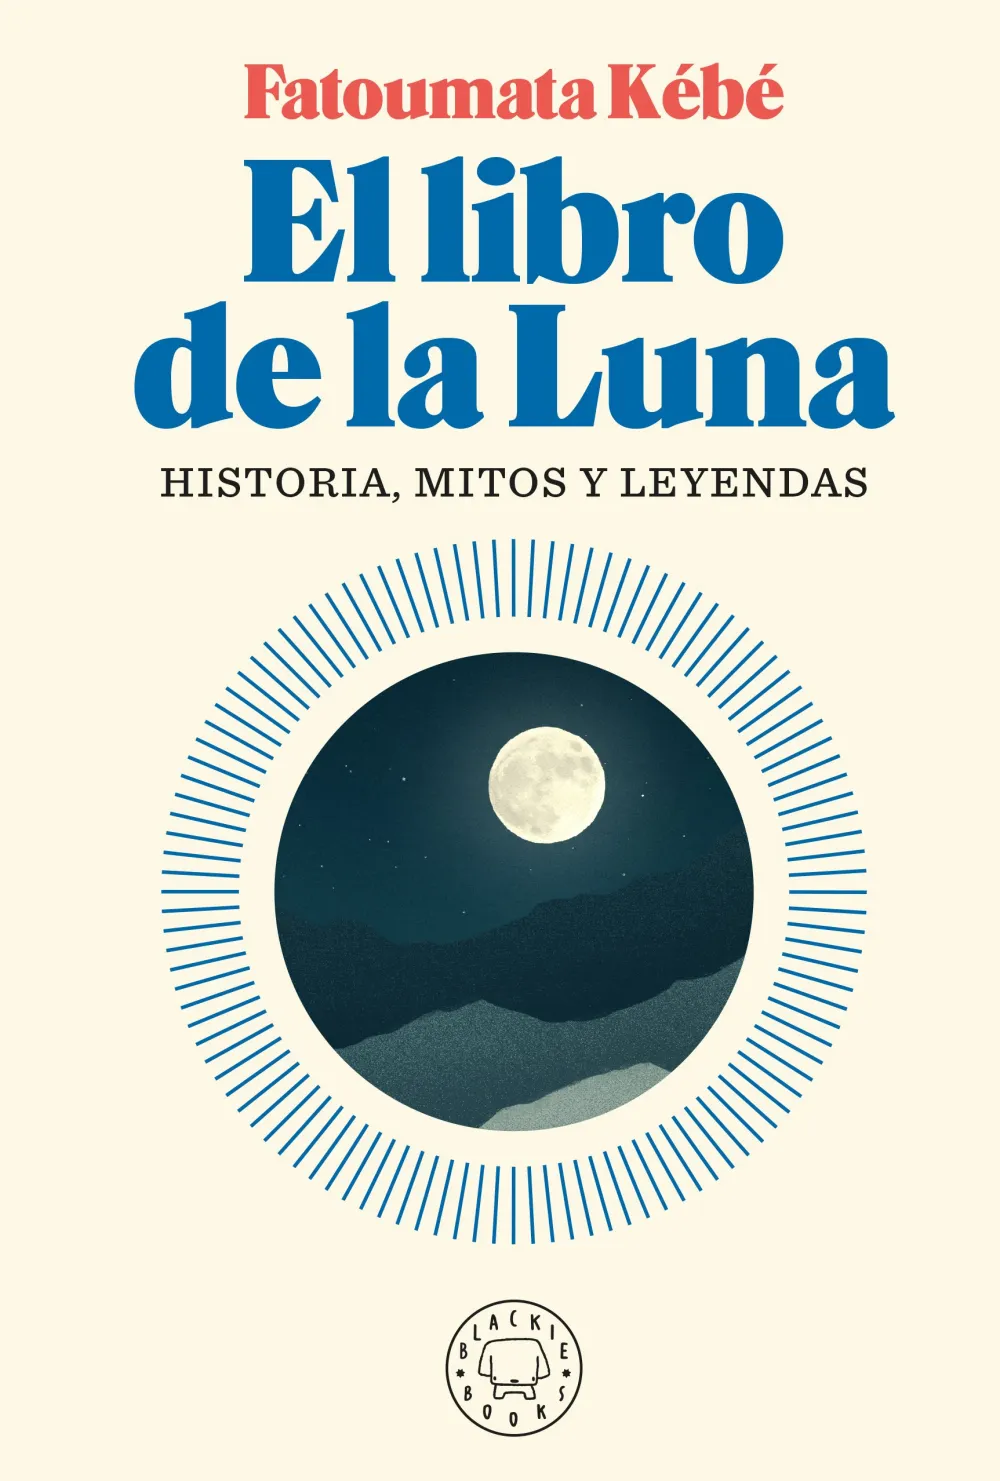 El libro de la Luna. Historia, mitos y leyendas. Fatoumata Kébé.